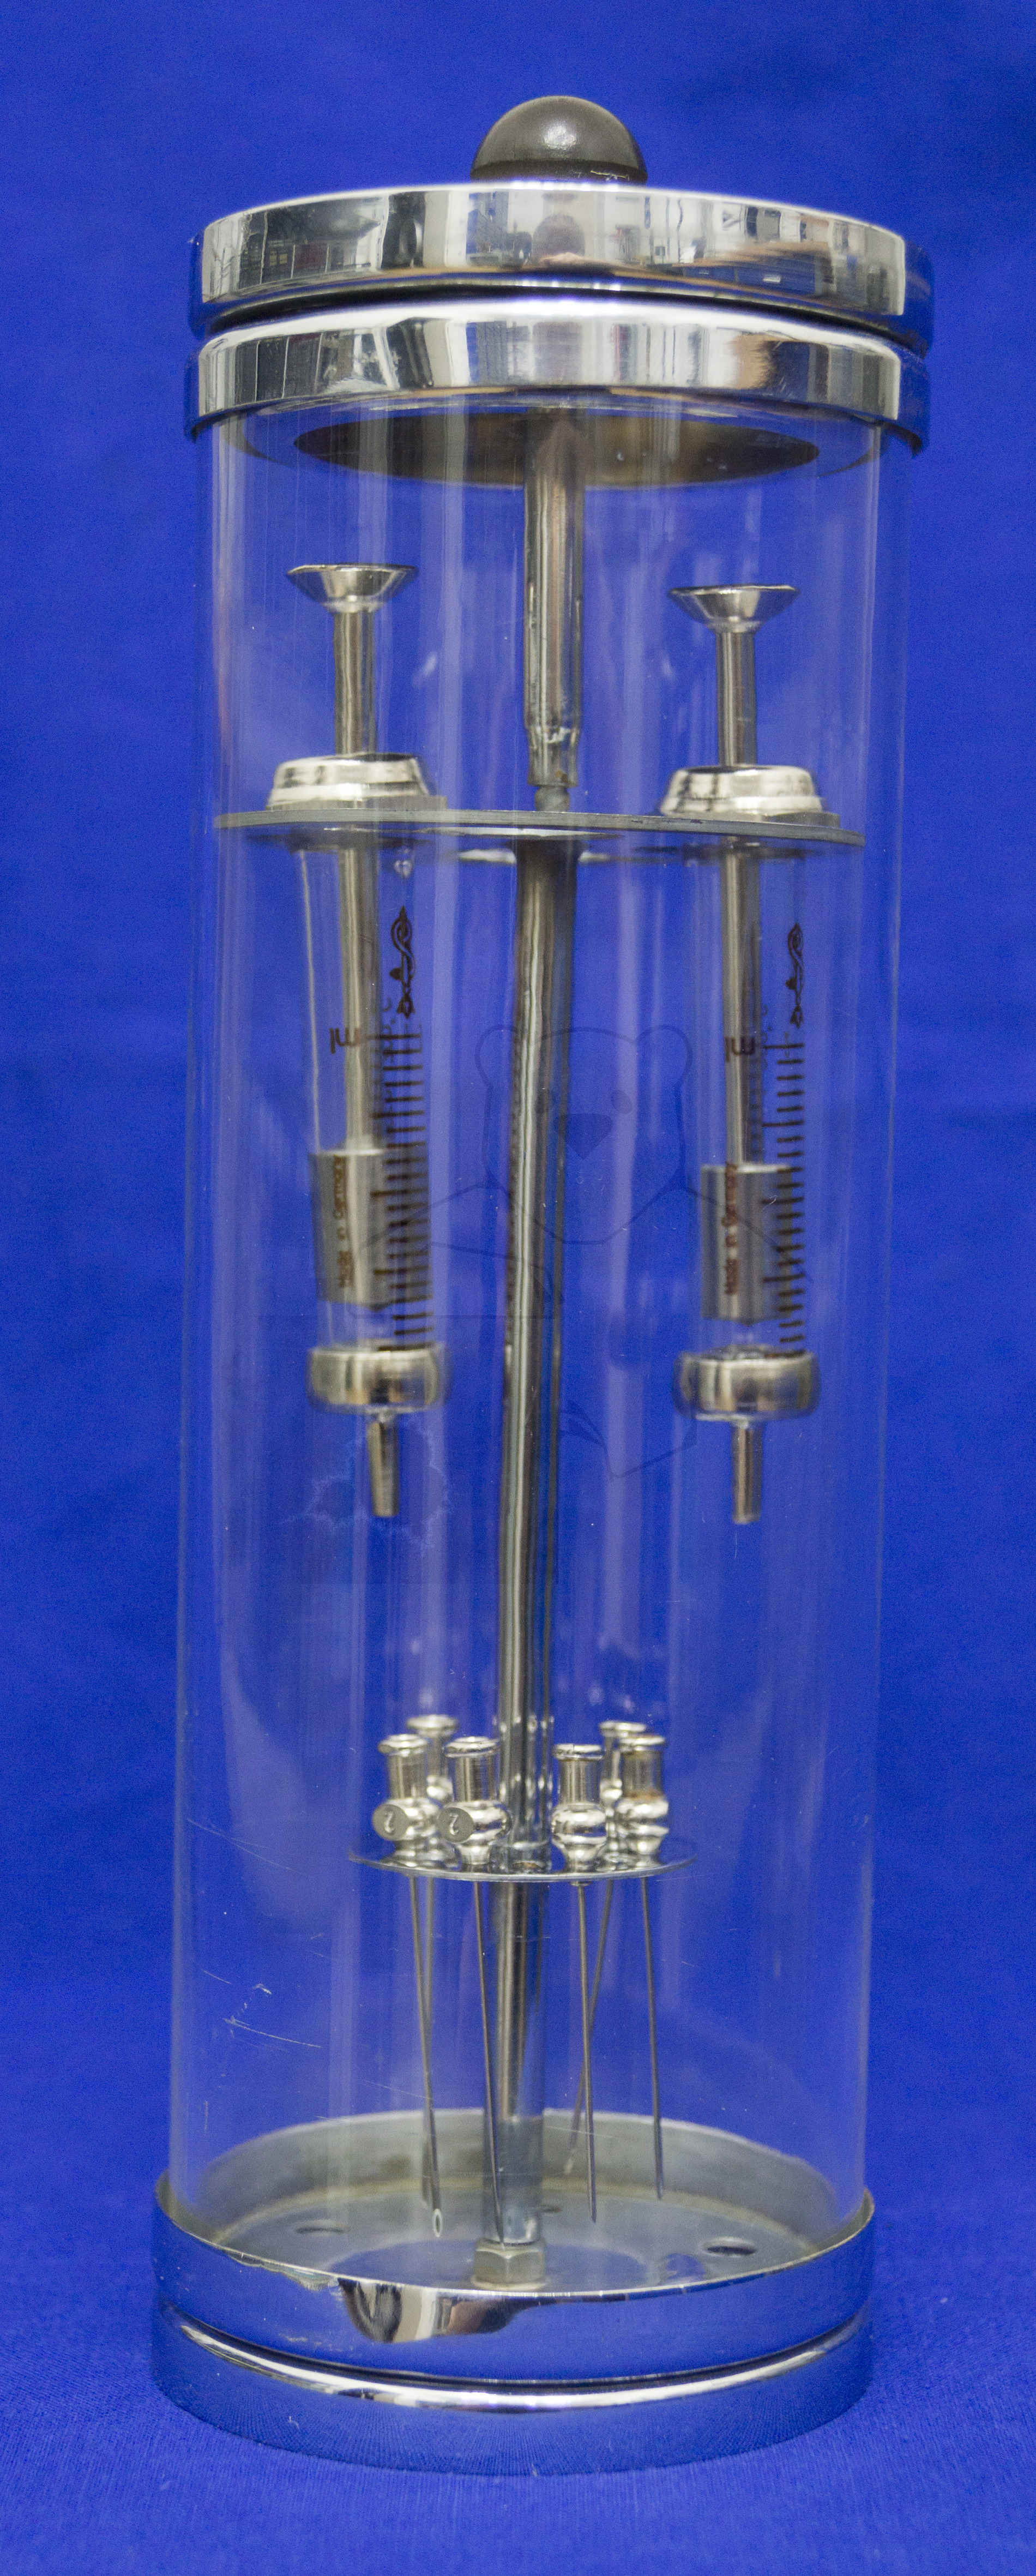 Glaszylinder zum Spritzen auskochen, Komplett montiert, mit Glaskolben